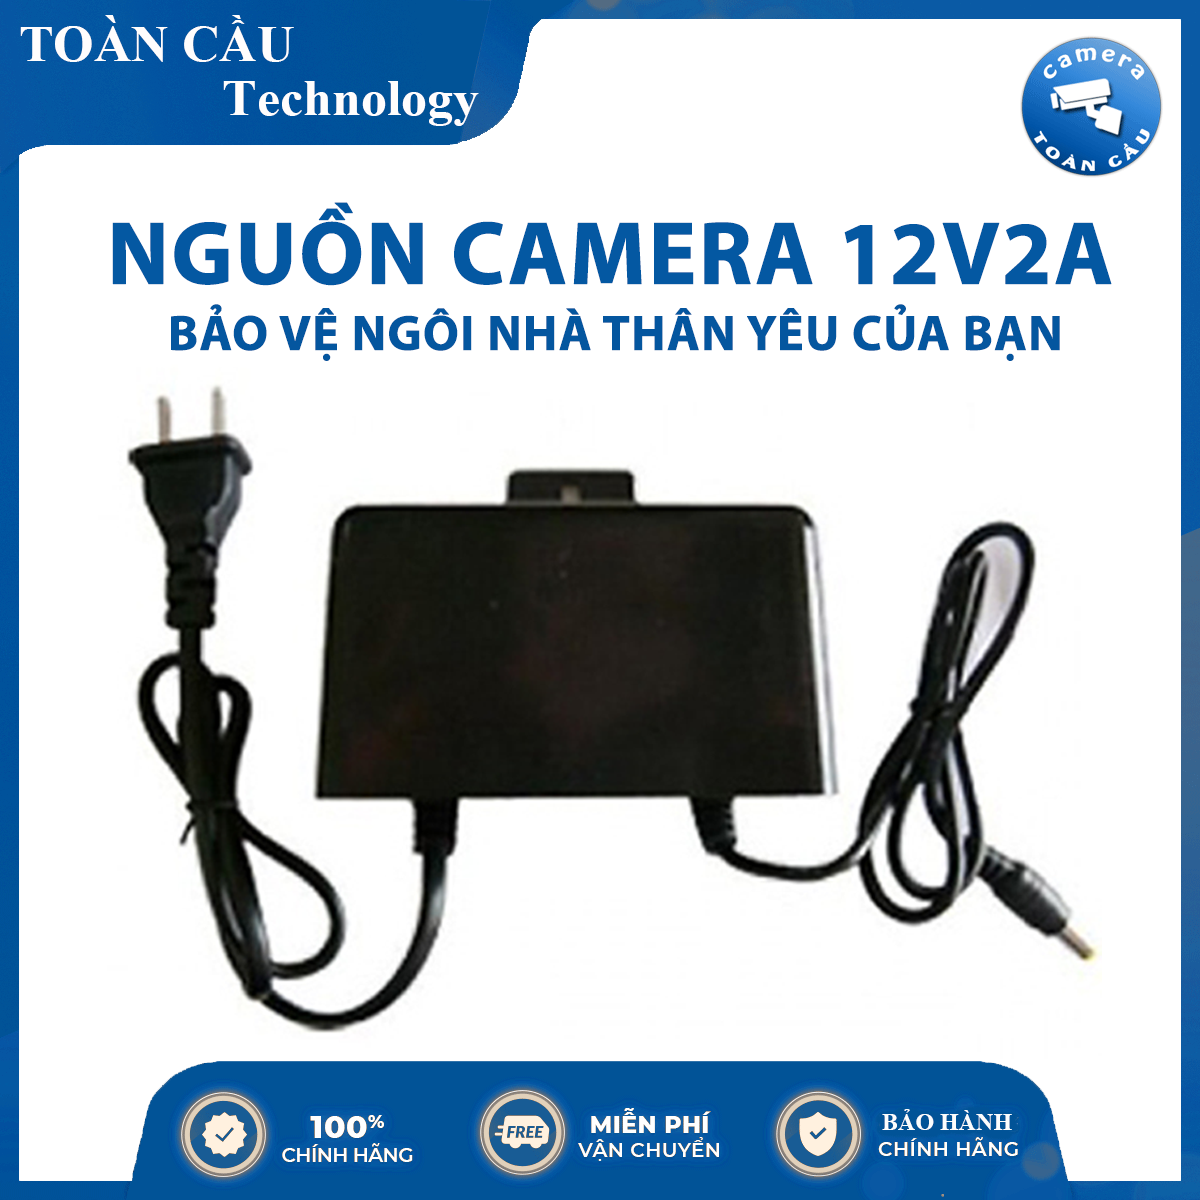 [100% CHÍNH HÃNG] Nguồn Camera 12V2A – Hiệu Suất Hoạt Động Cao – Camera Toàn Cầu